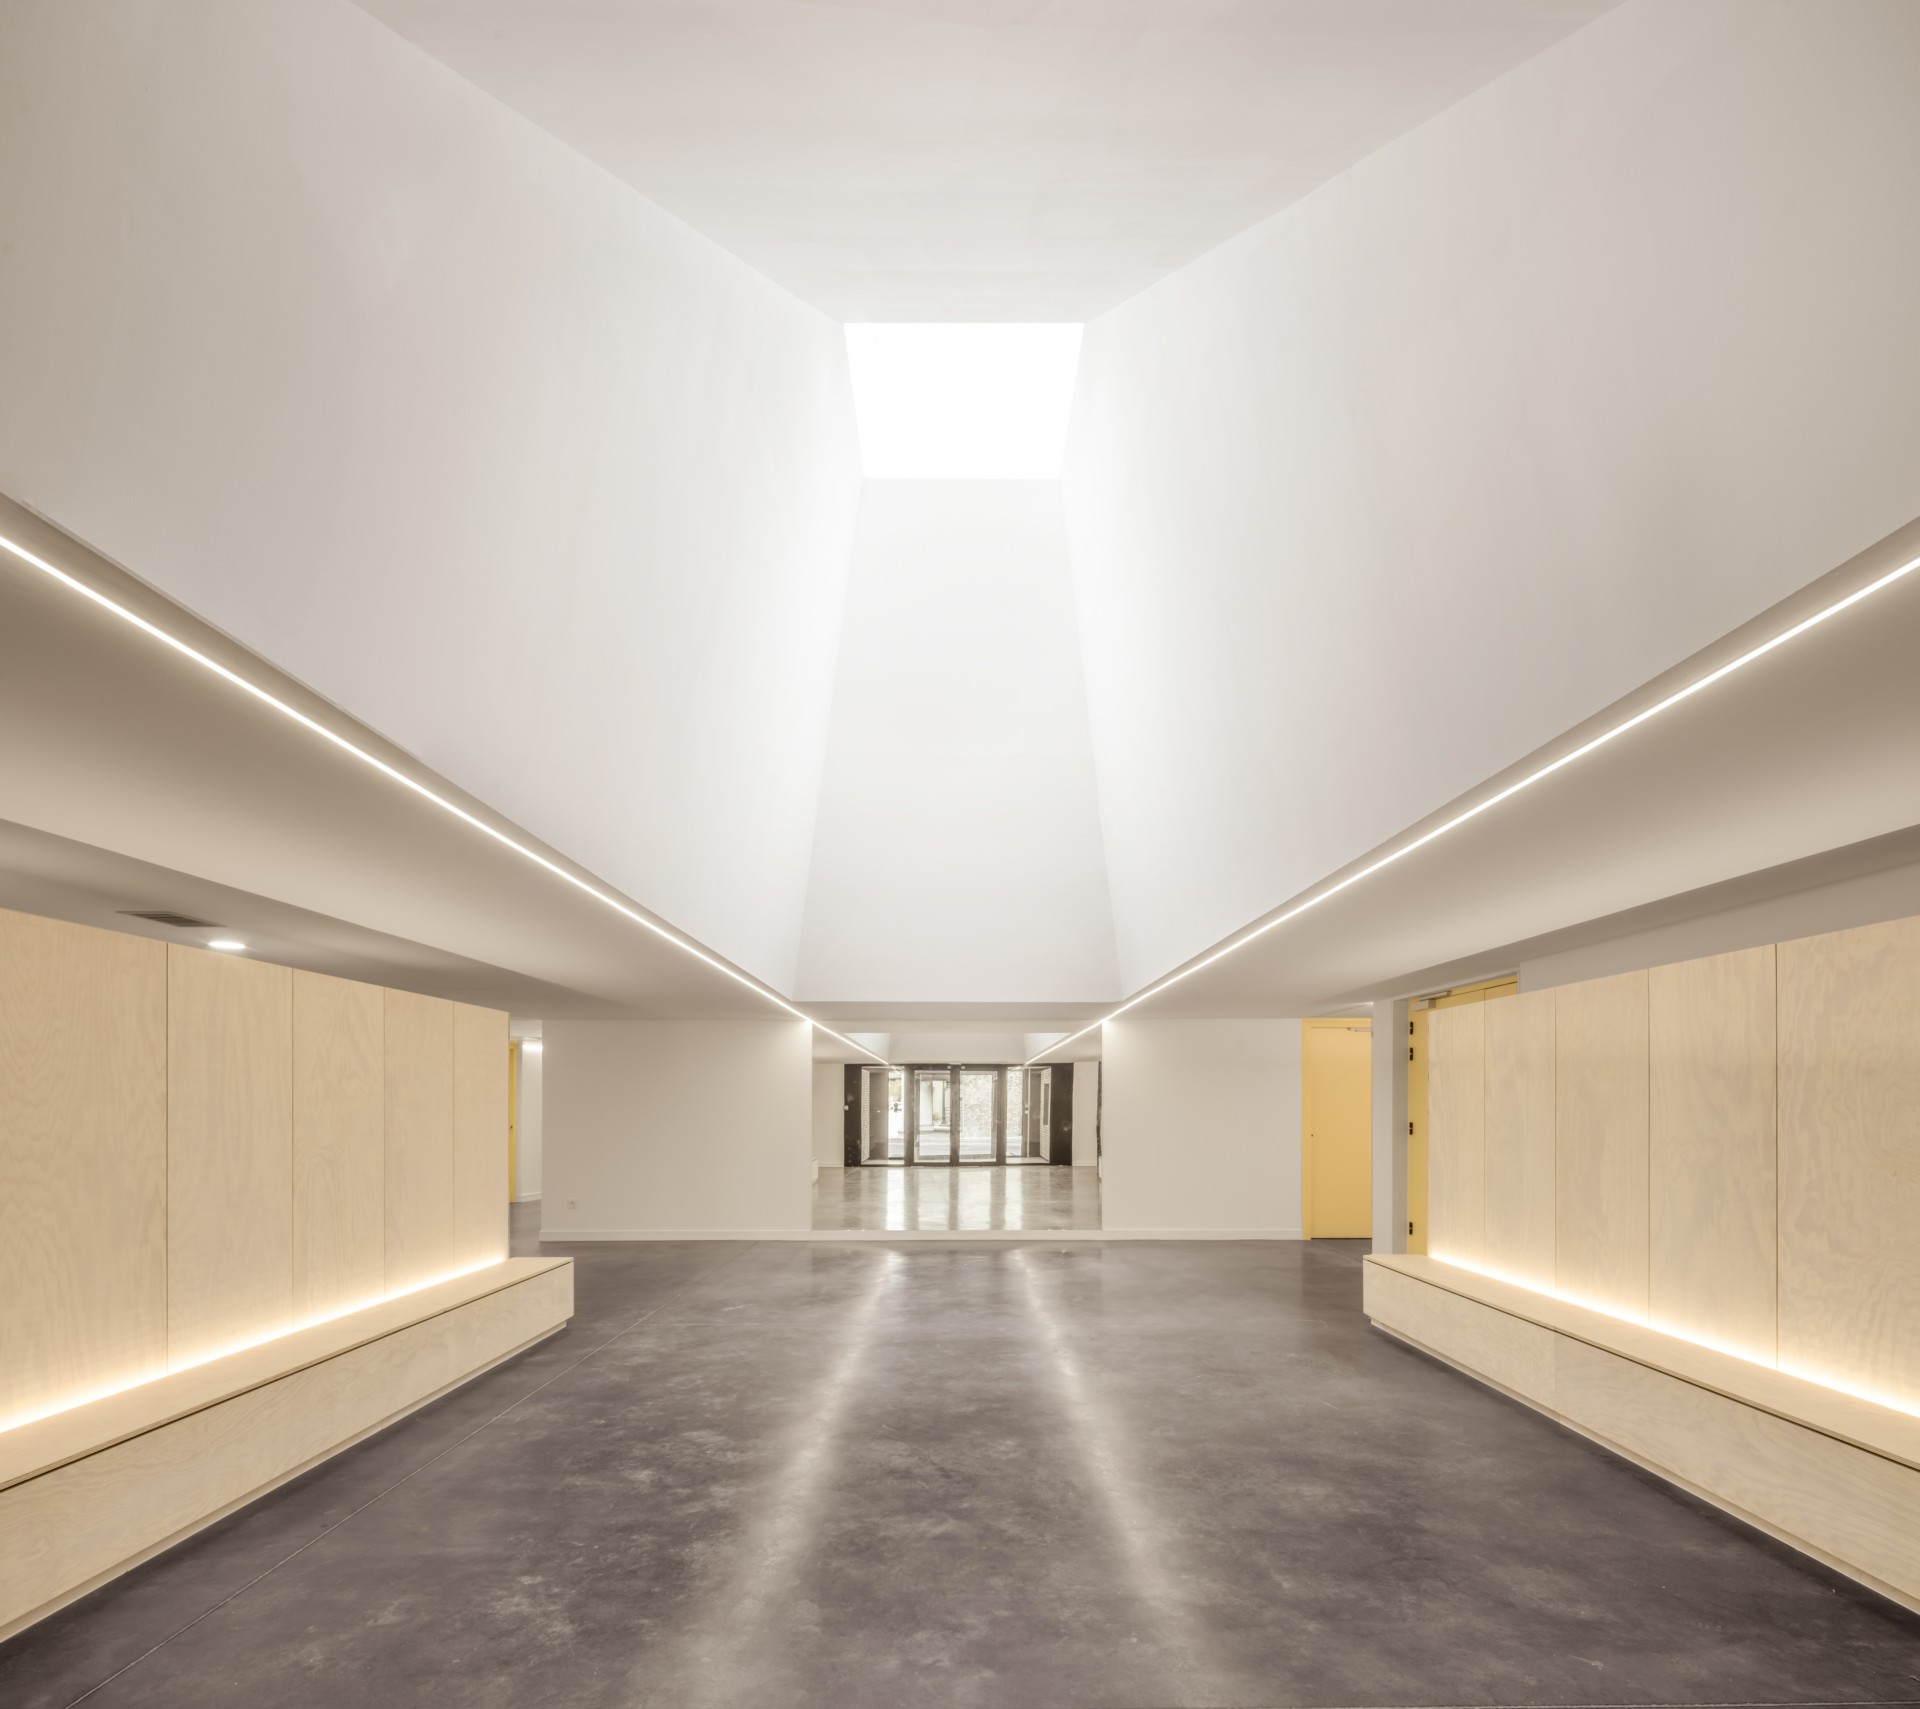 Opus 5 Architectes completa um novo centro cultural numa quinta